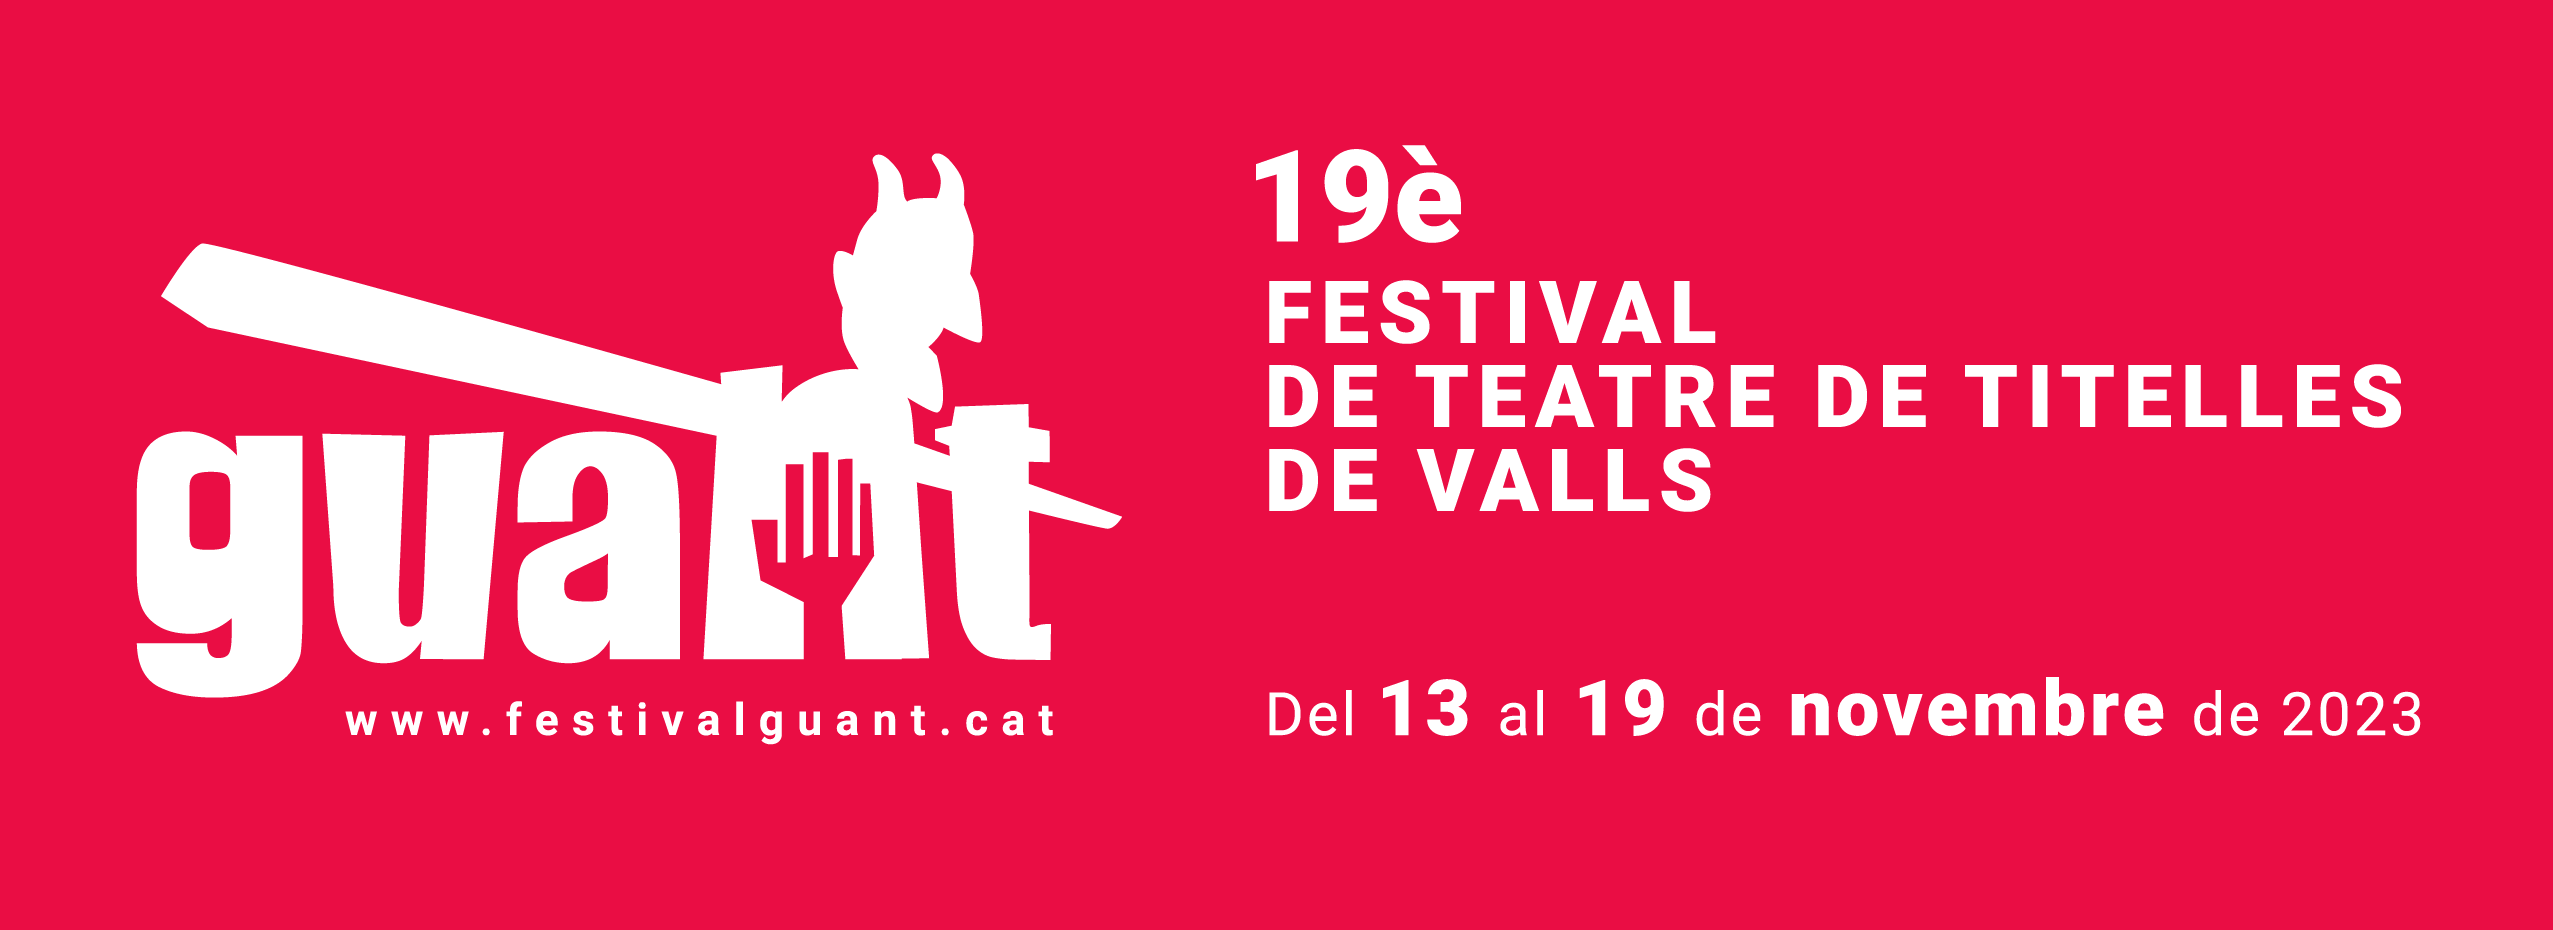 19è Festival internacional de teatre de titelles de Valls | Programació a Valls ’23